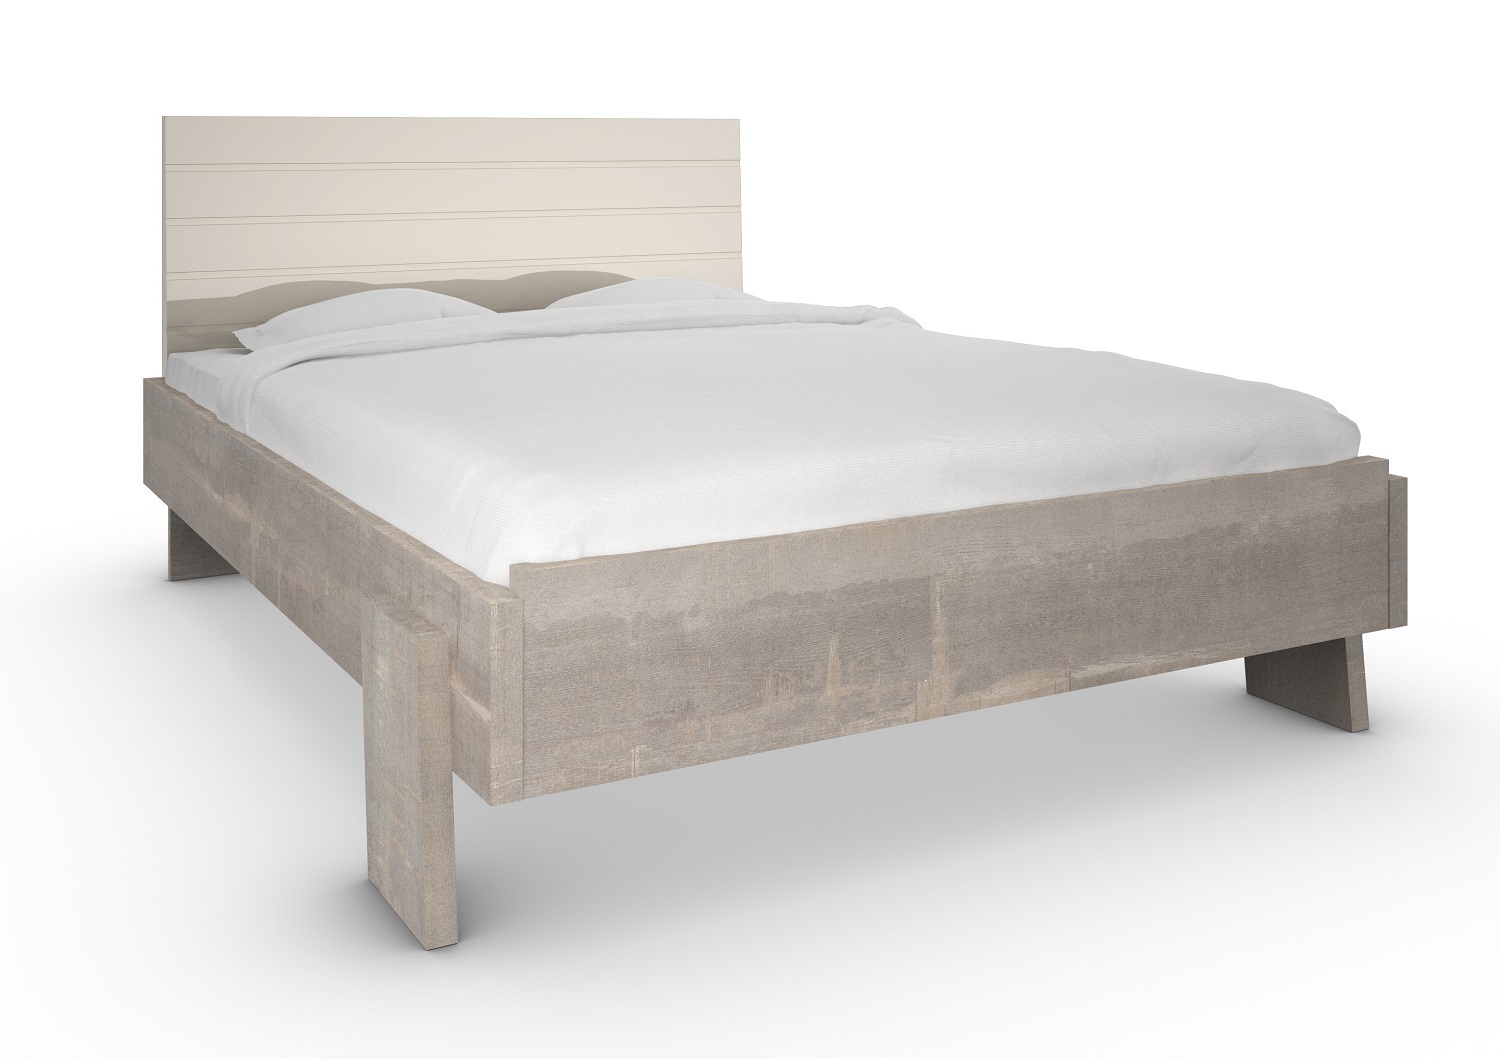 Bilrich Bedroom Furniture - Marina Queen Bed